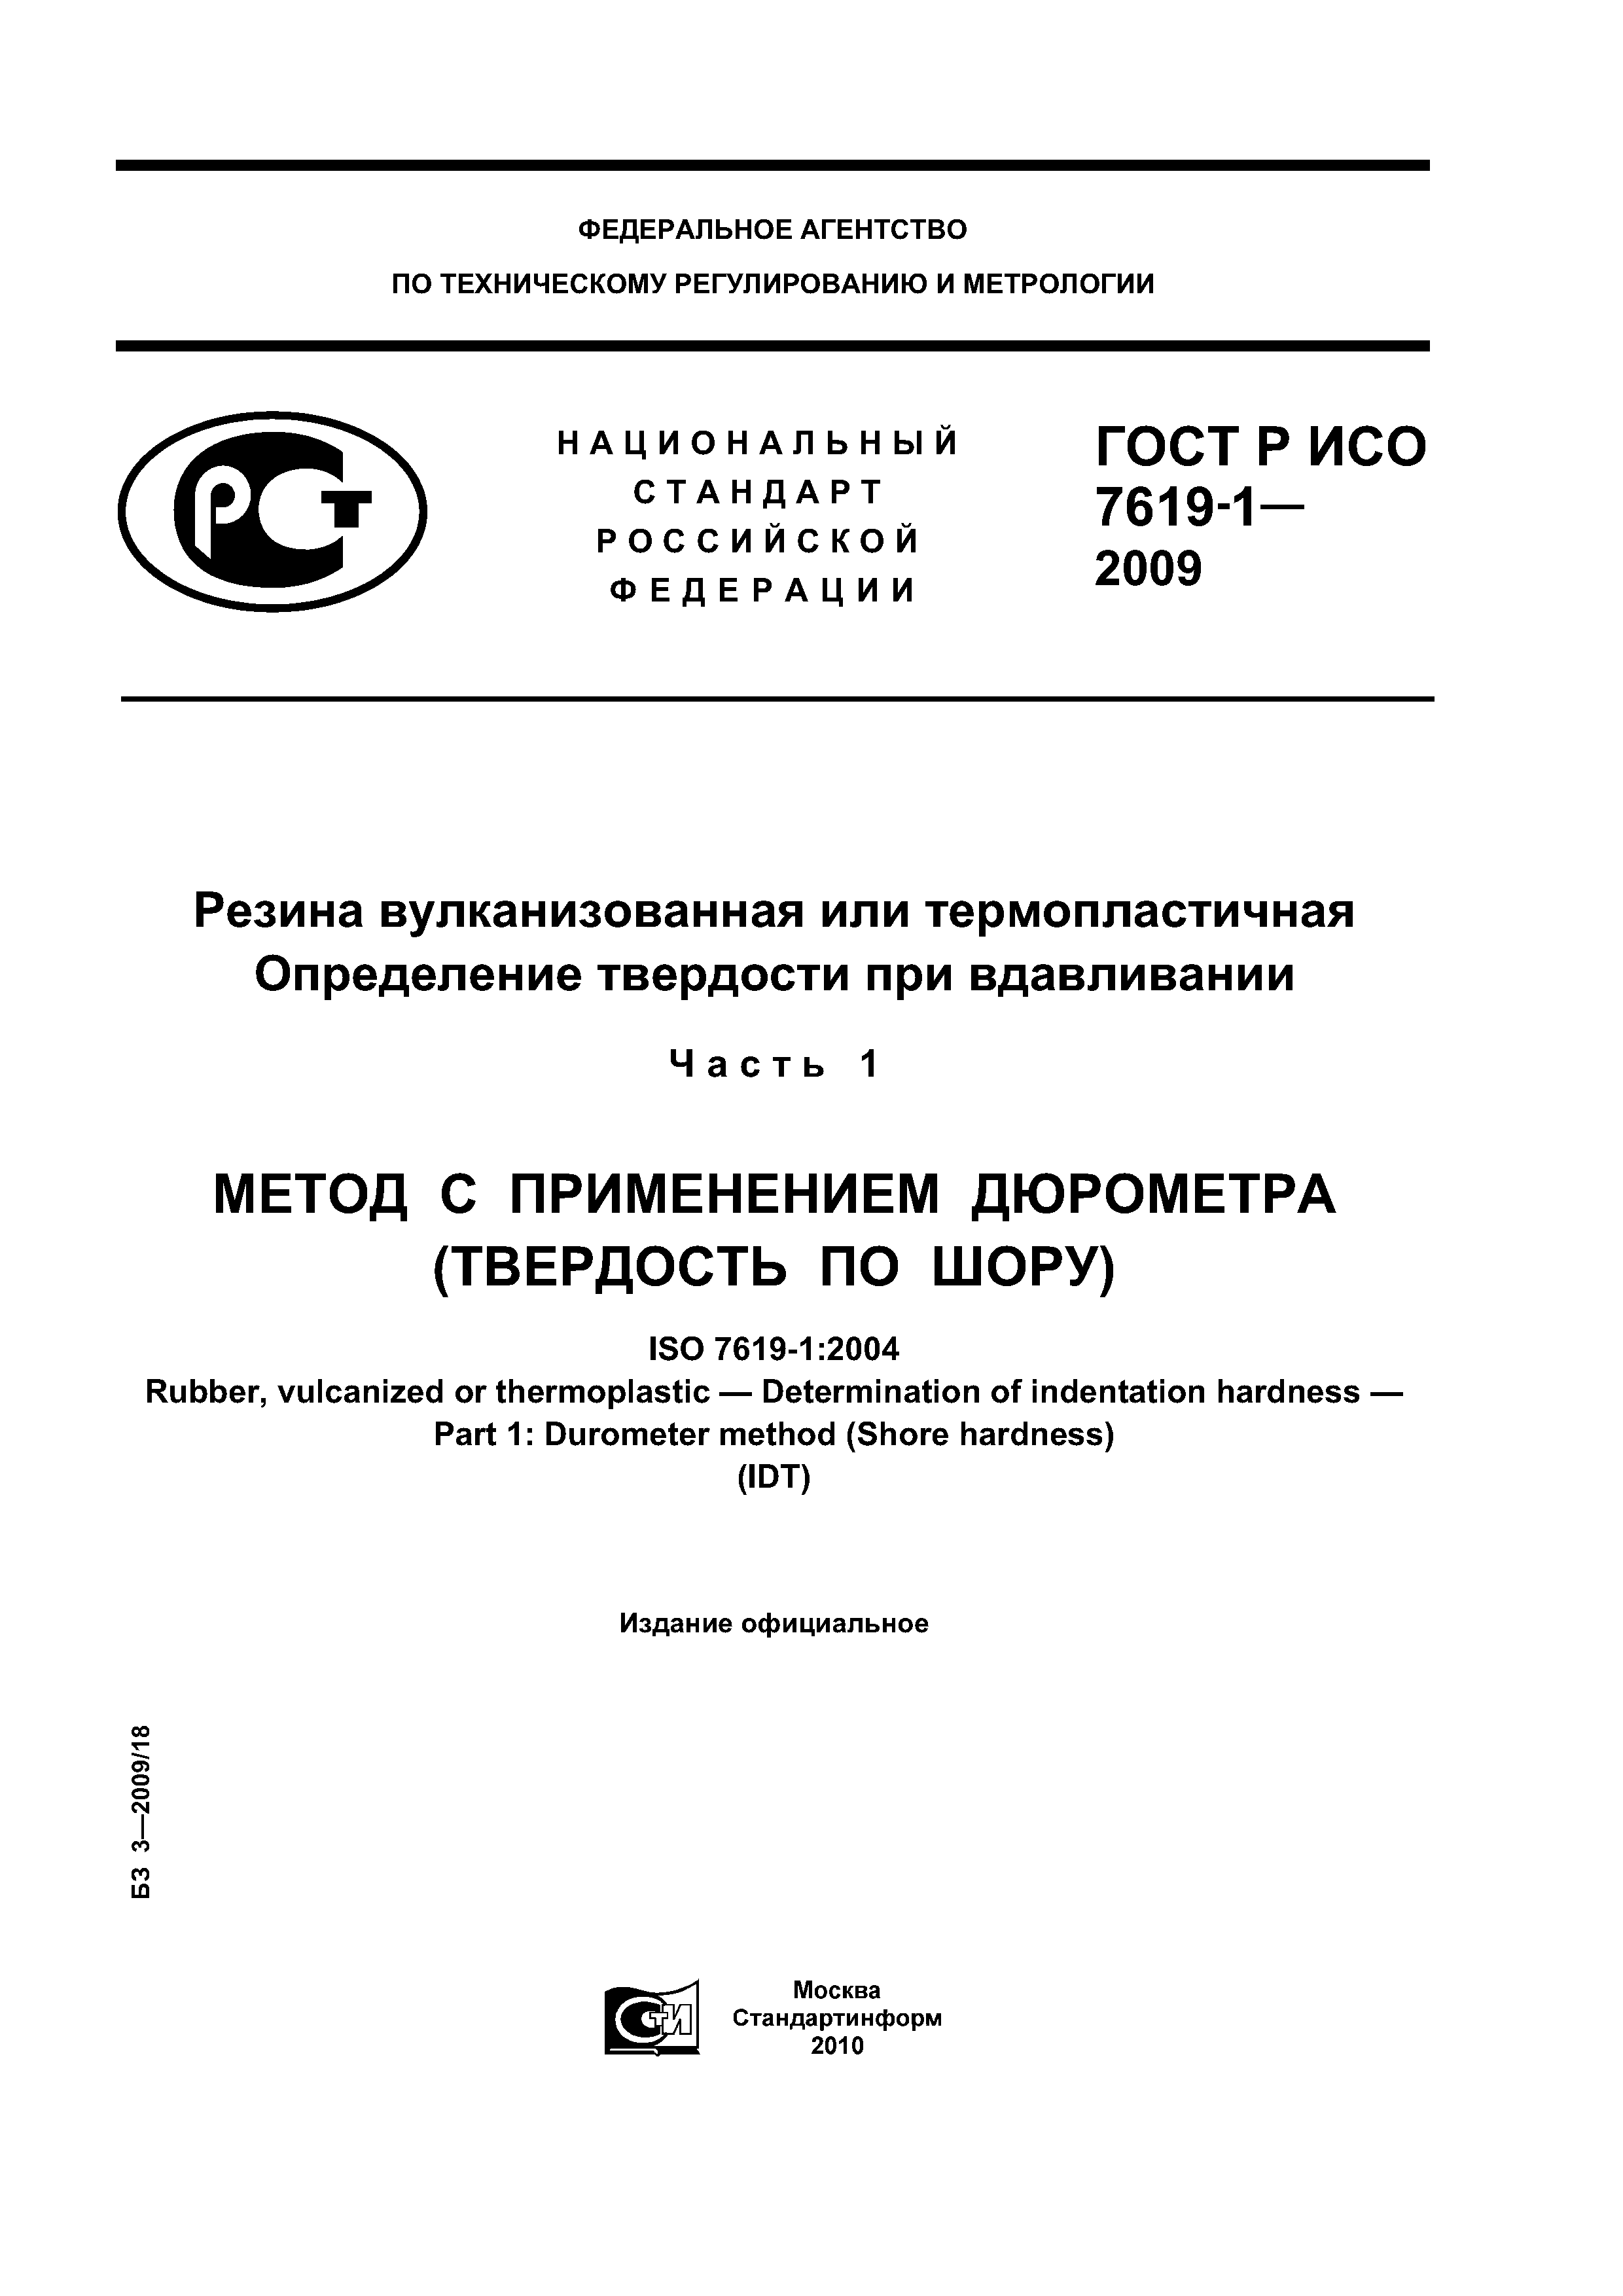 ГОСТ Р ИСО 7619-1-2009